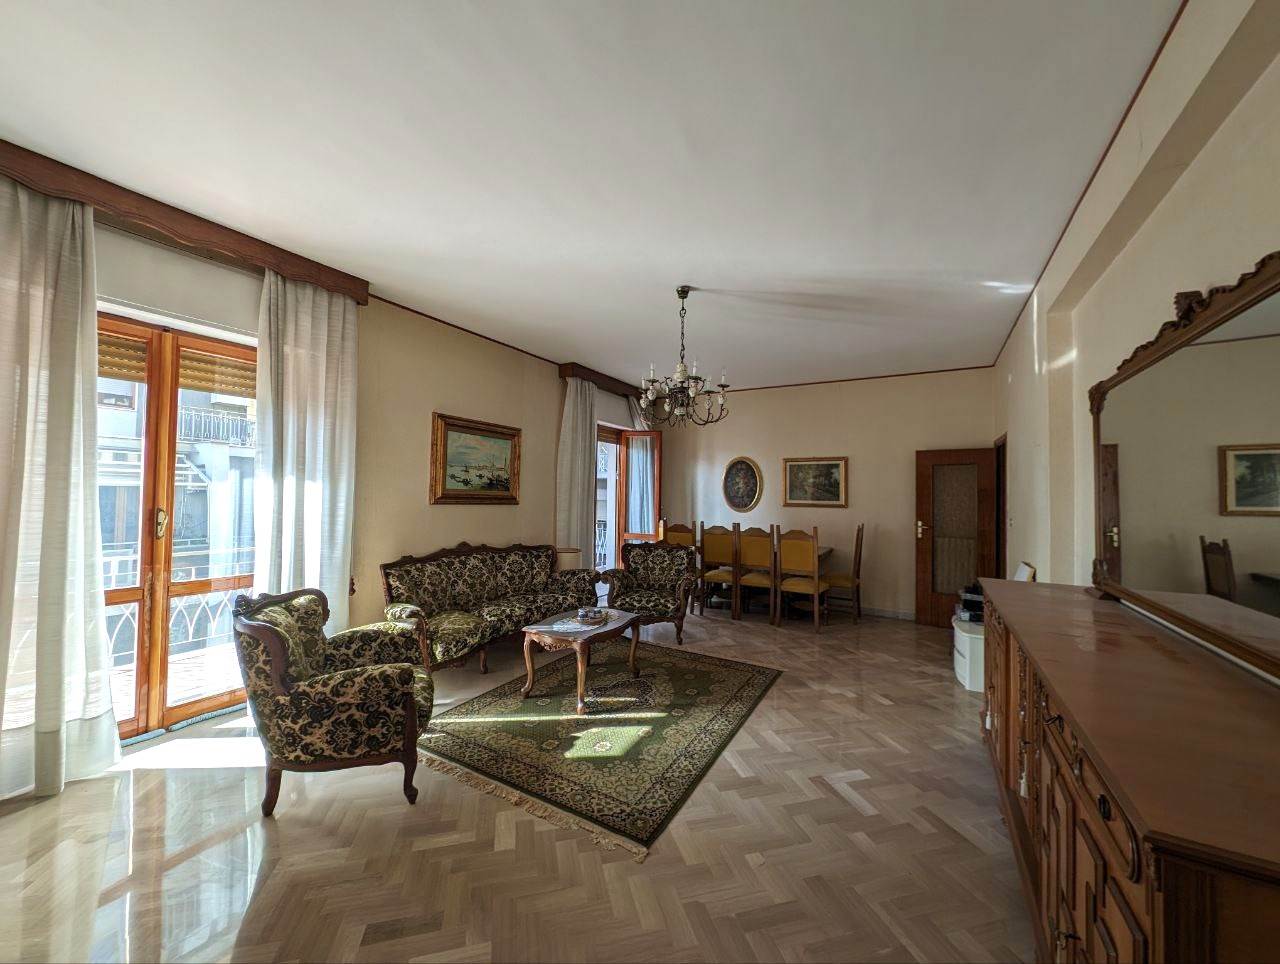 Appartamento in vendita a San Severo, 4 locali, prezzo € 95.000 | PortaleAgenzieImmobiliari.it